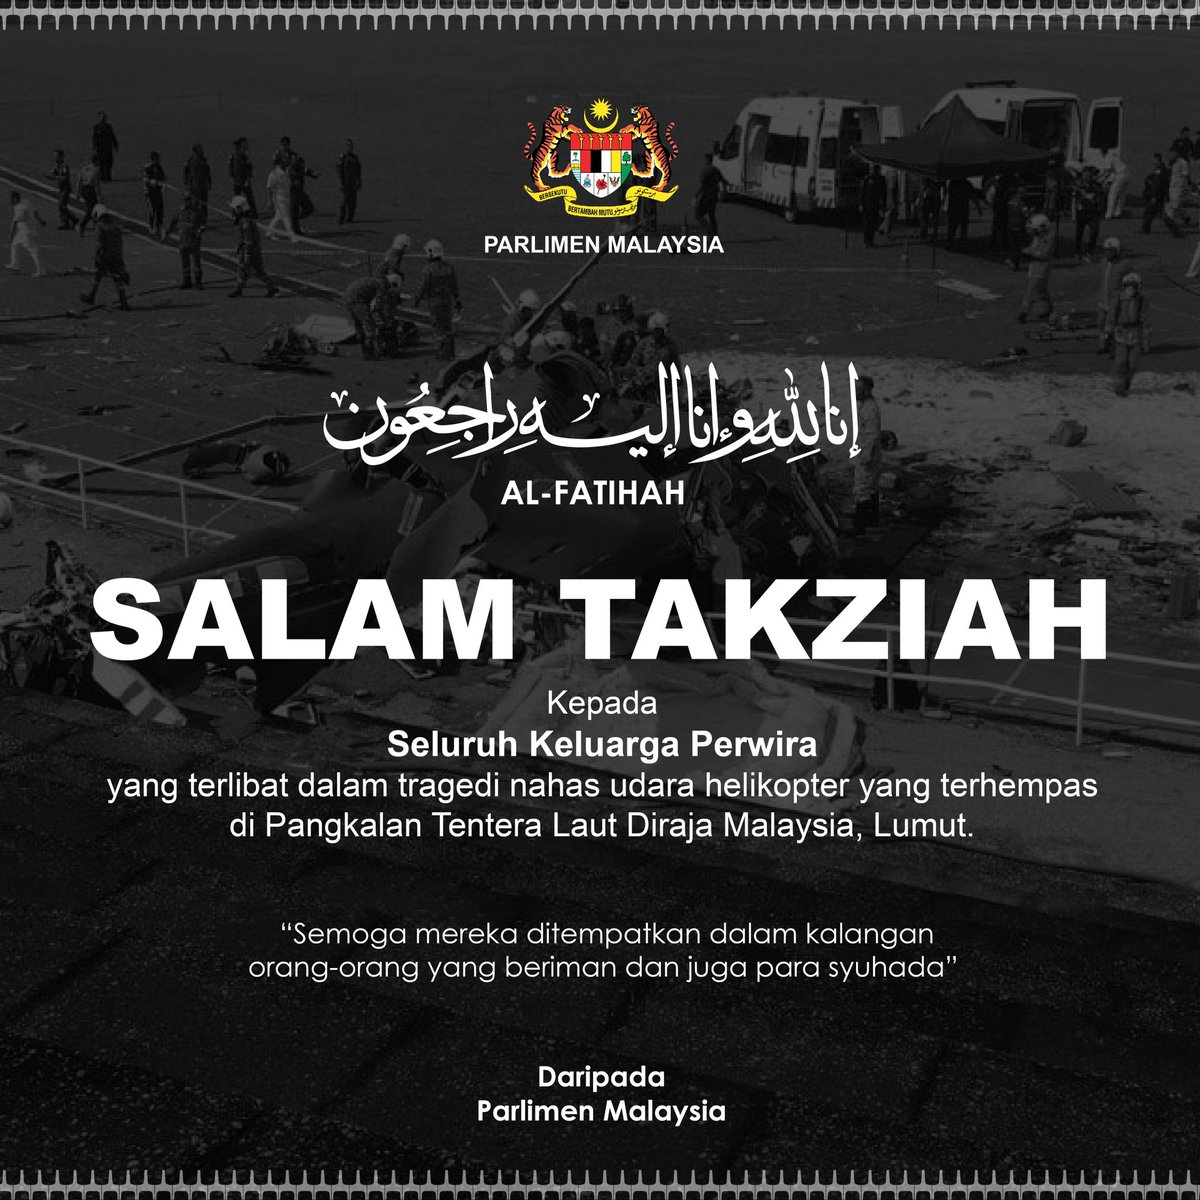 Salam takziah kepada seluruh keluarga mangsa nahas helikopter di Pangkalan TLDM Lumut. Semoga segala jasa dan pengorbanan yang telah dicurahkannya akan mendapat sebaik-baik ganjaran di sisi Allah SWT. Parlimen Malaysia